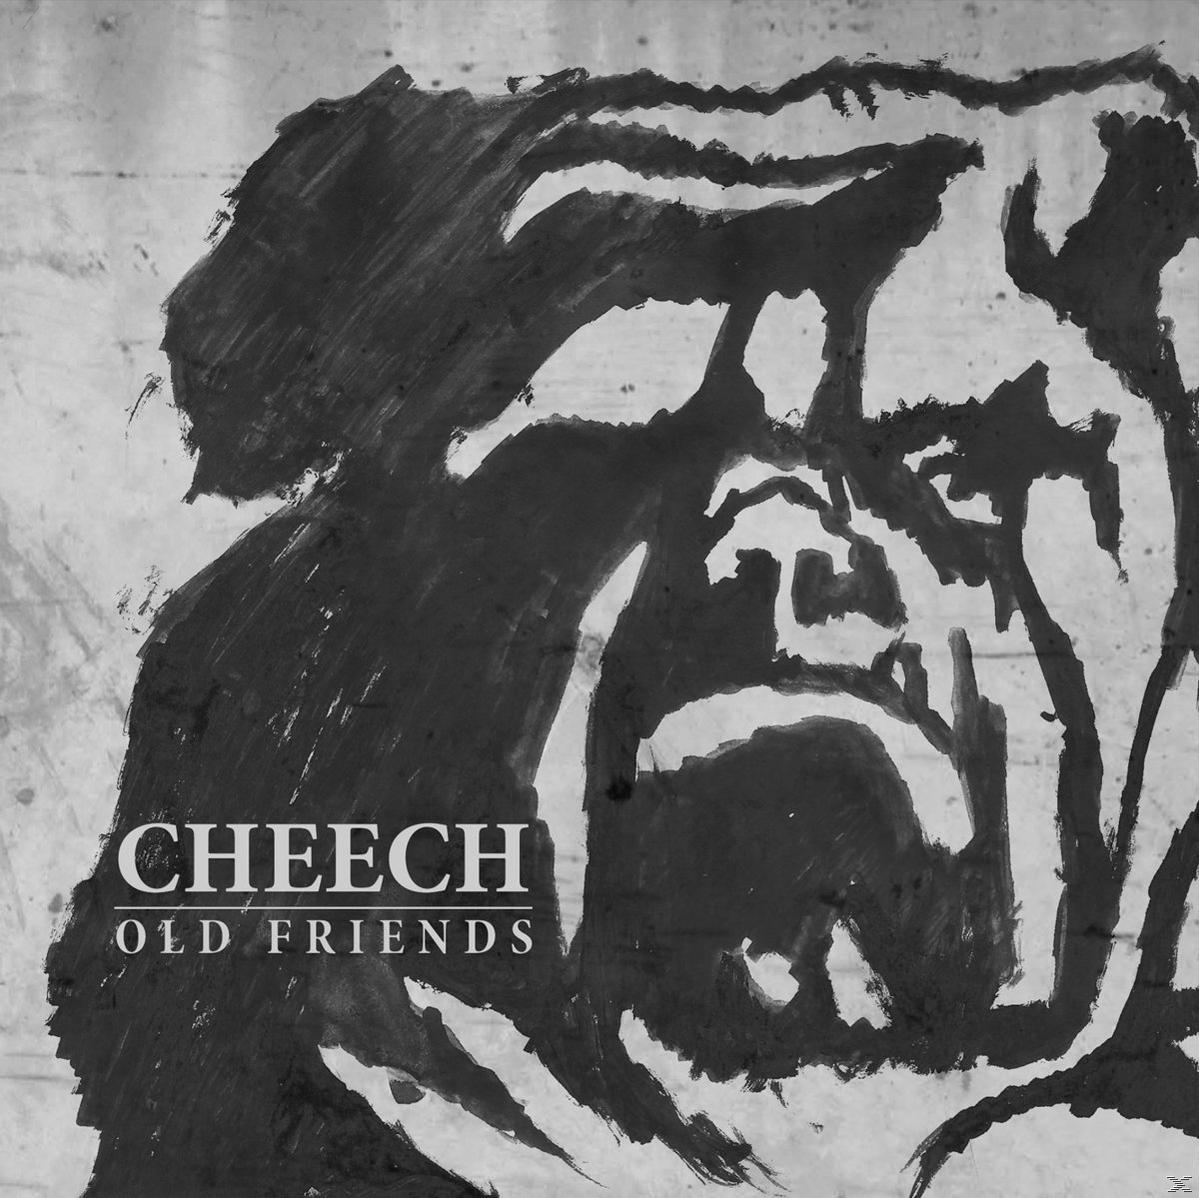 (CD) Cheech - - Old Friends (Digipak)